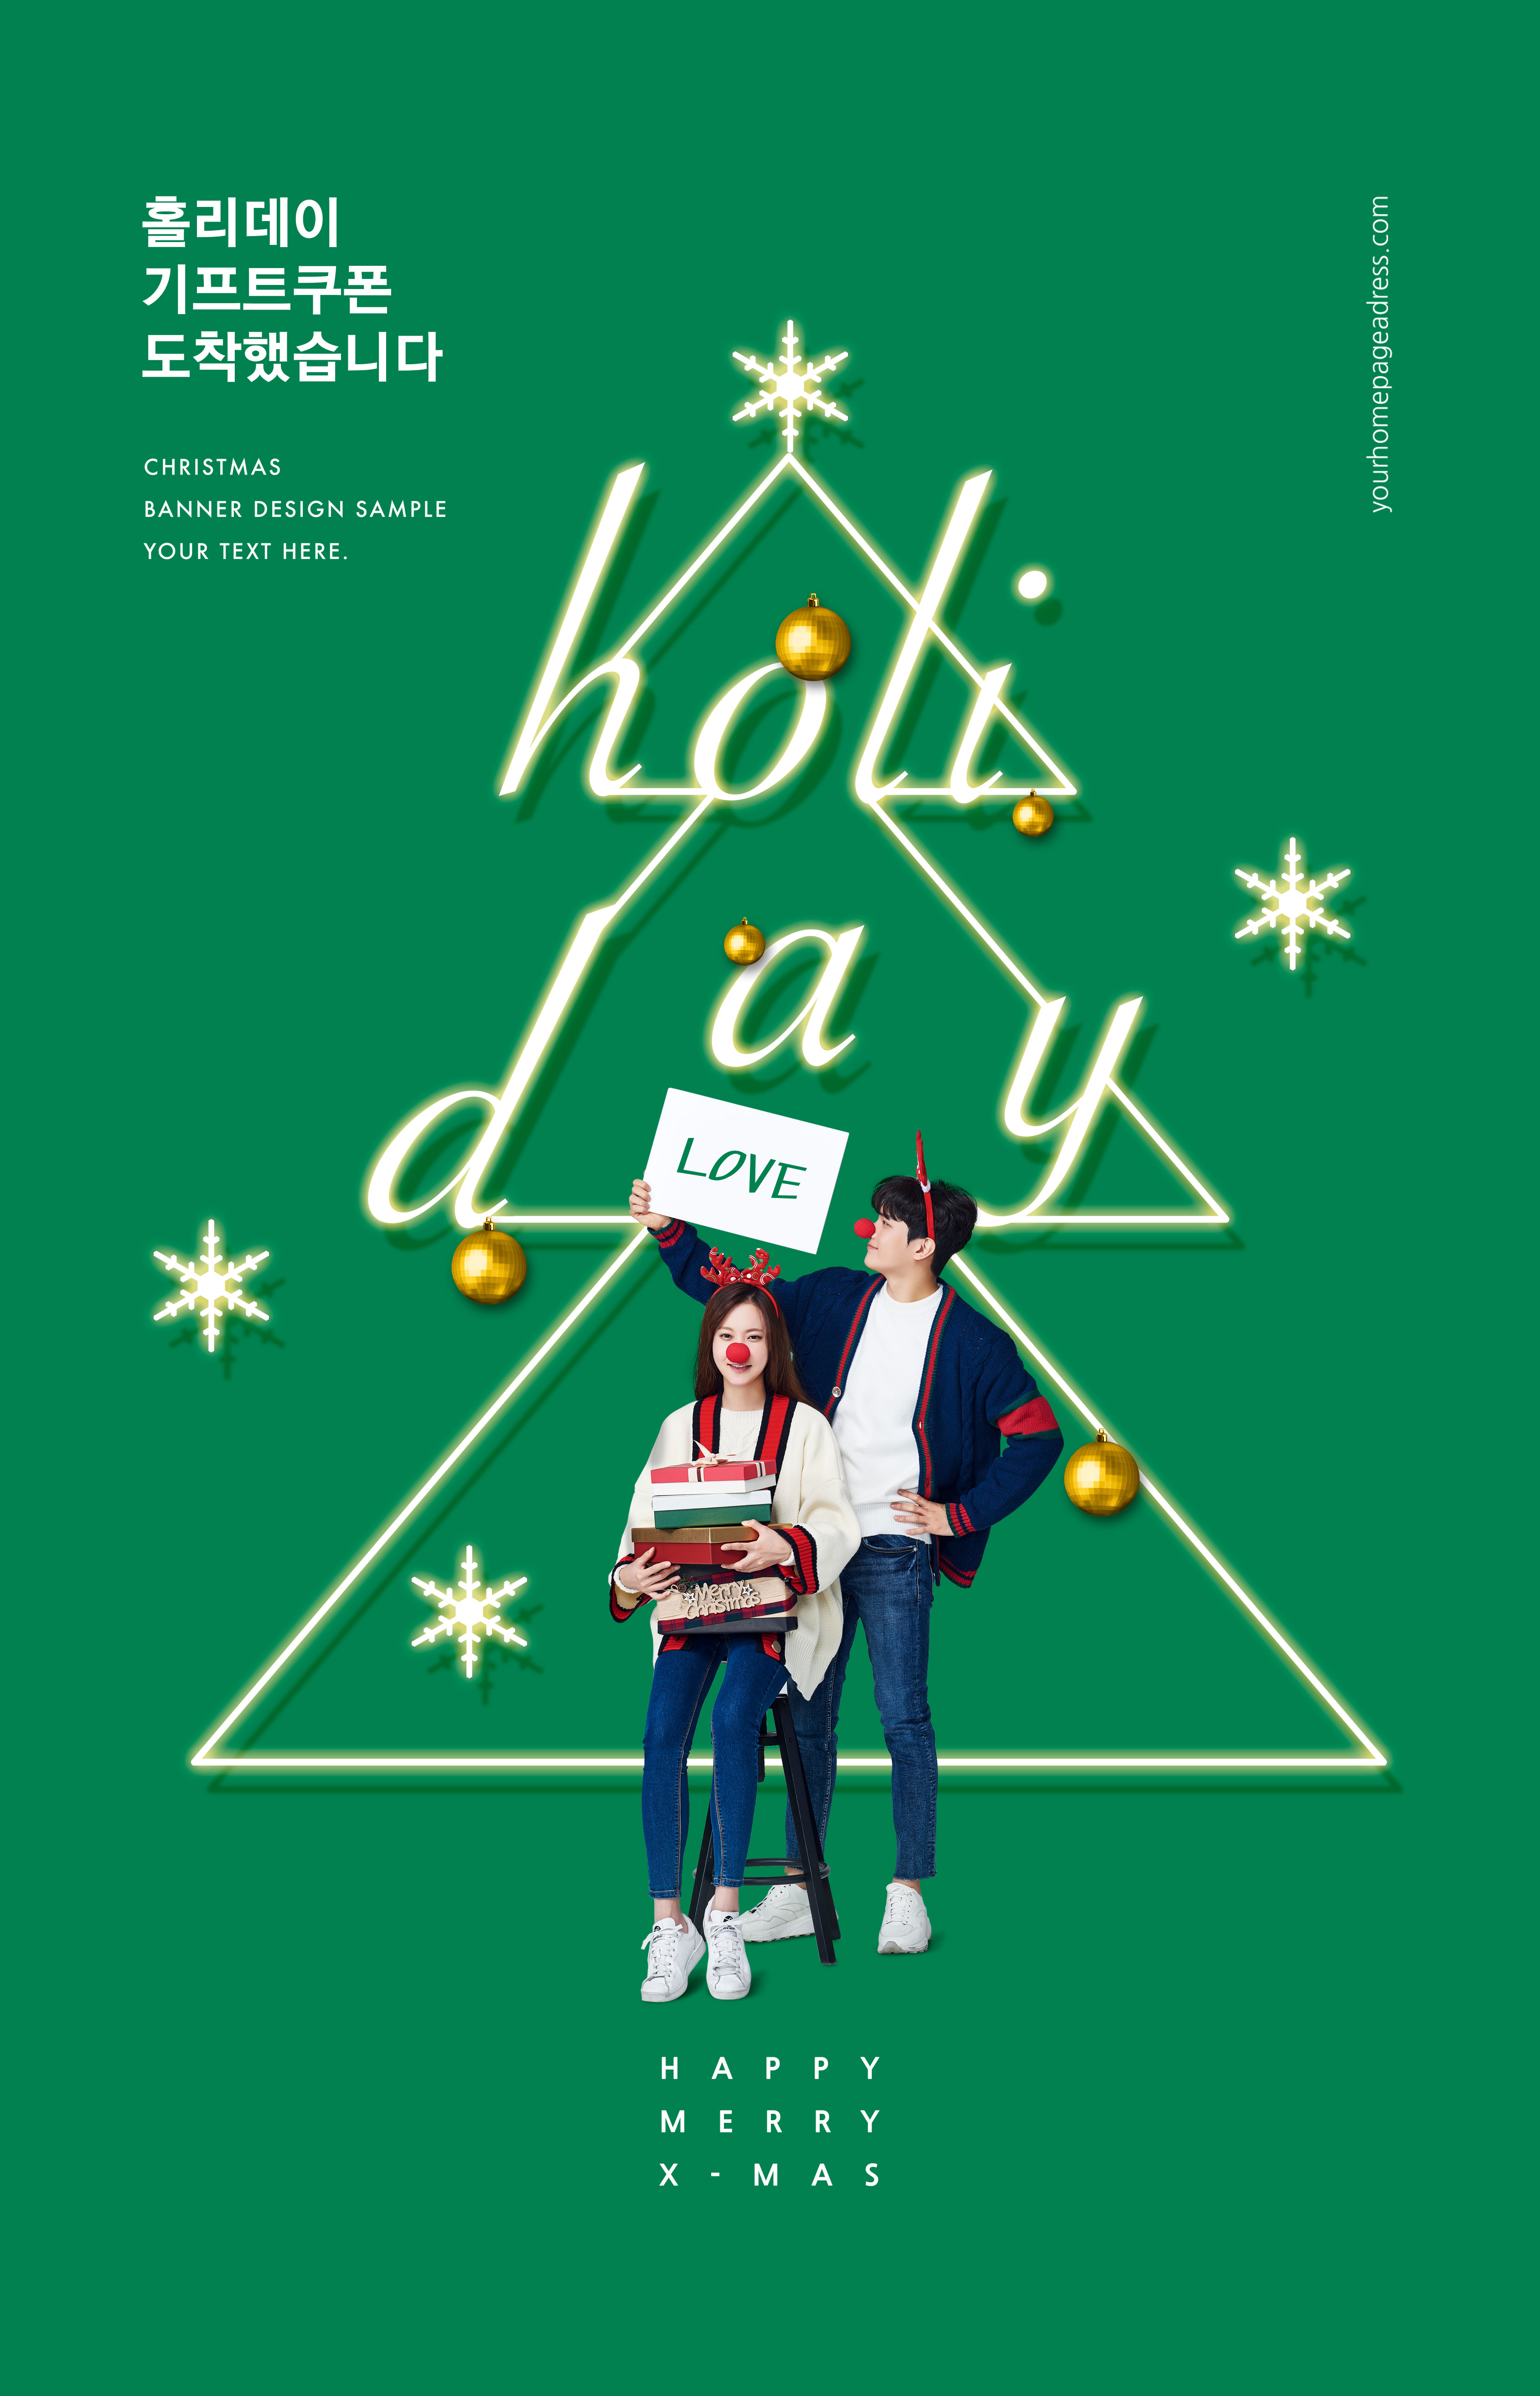 暖冬浪漫圣诞告白/购物主题海报套装插图(1)